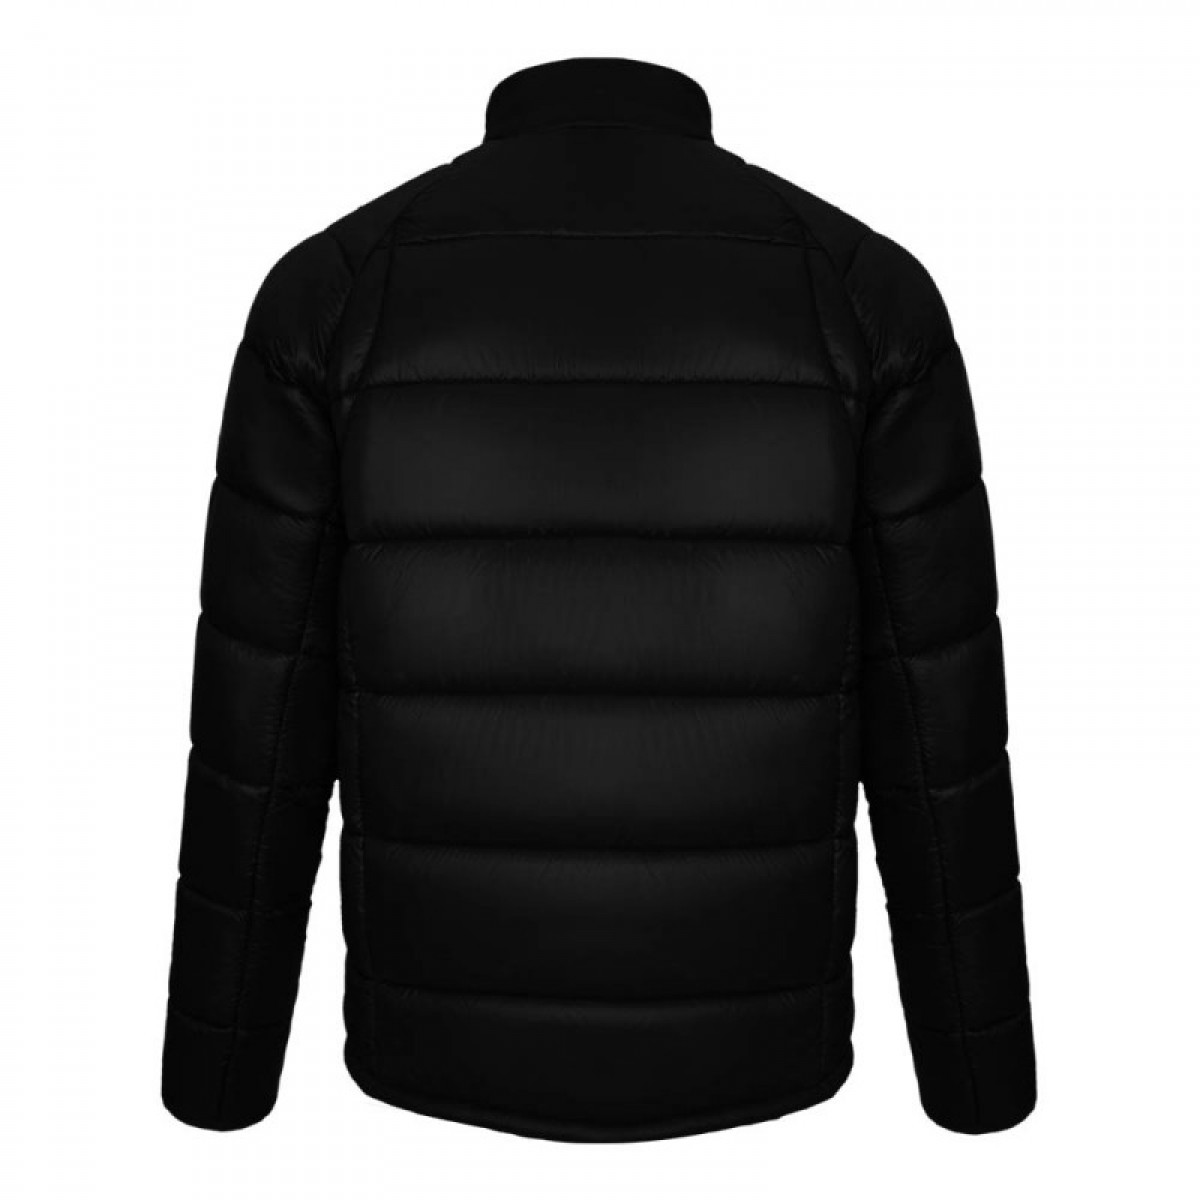 extreme-jacket-kej15162